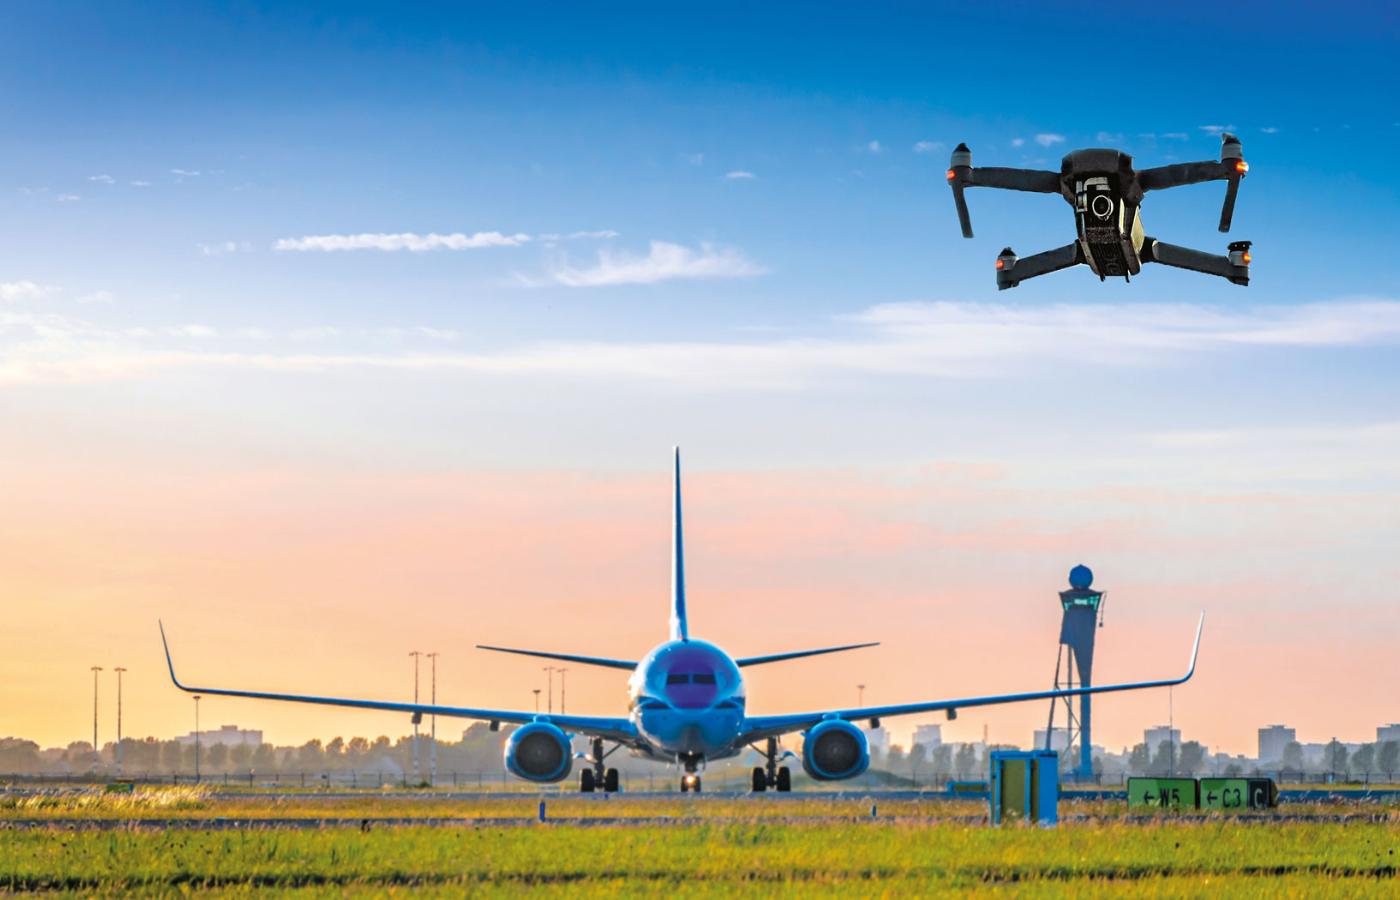 Drony stały się dziś poważnym wyzwaniem dla bezpieczeństwa lotnisk. Kiedyś groźne były ptaki, dziś bezzałogowe statki powietrzne (BSP).